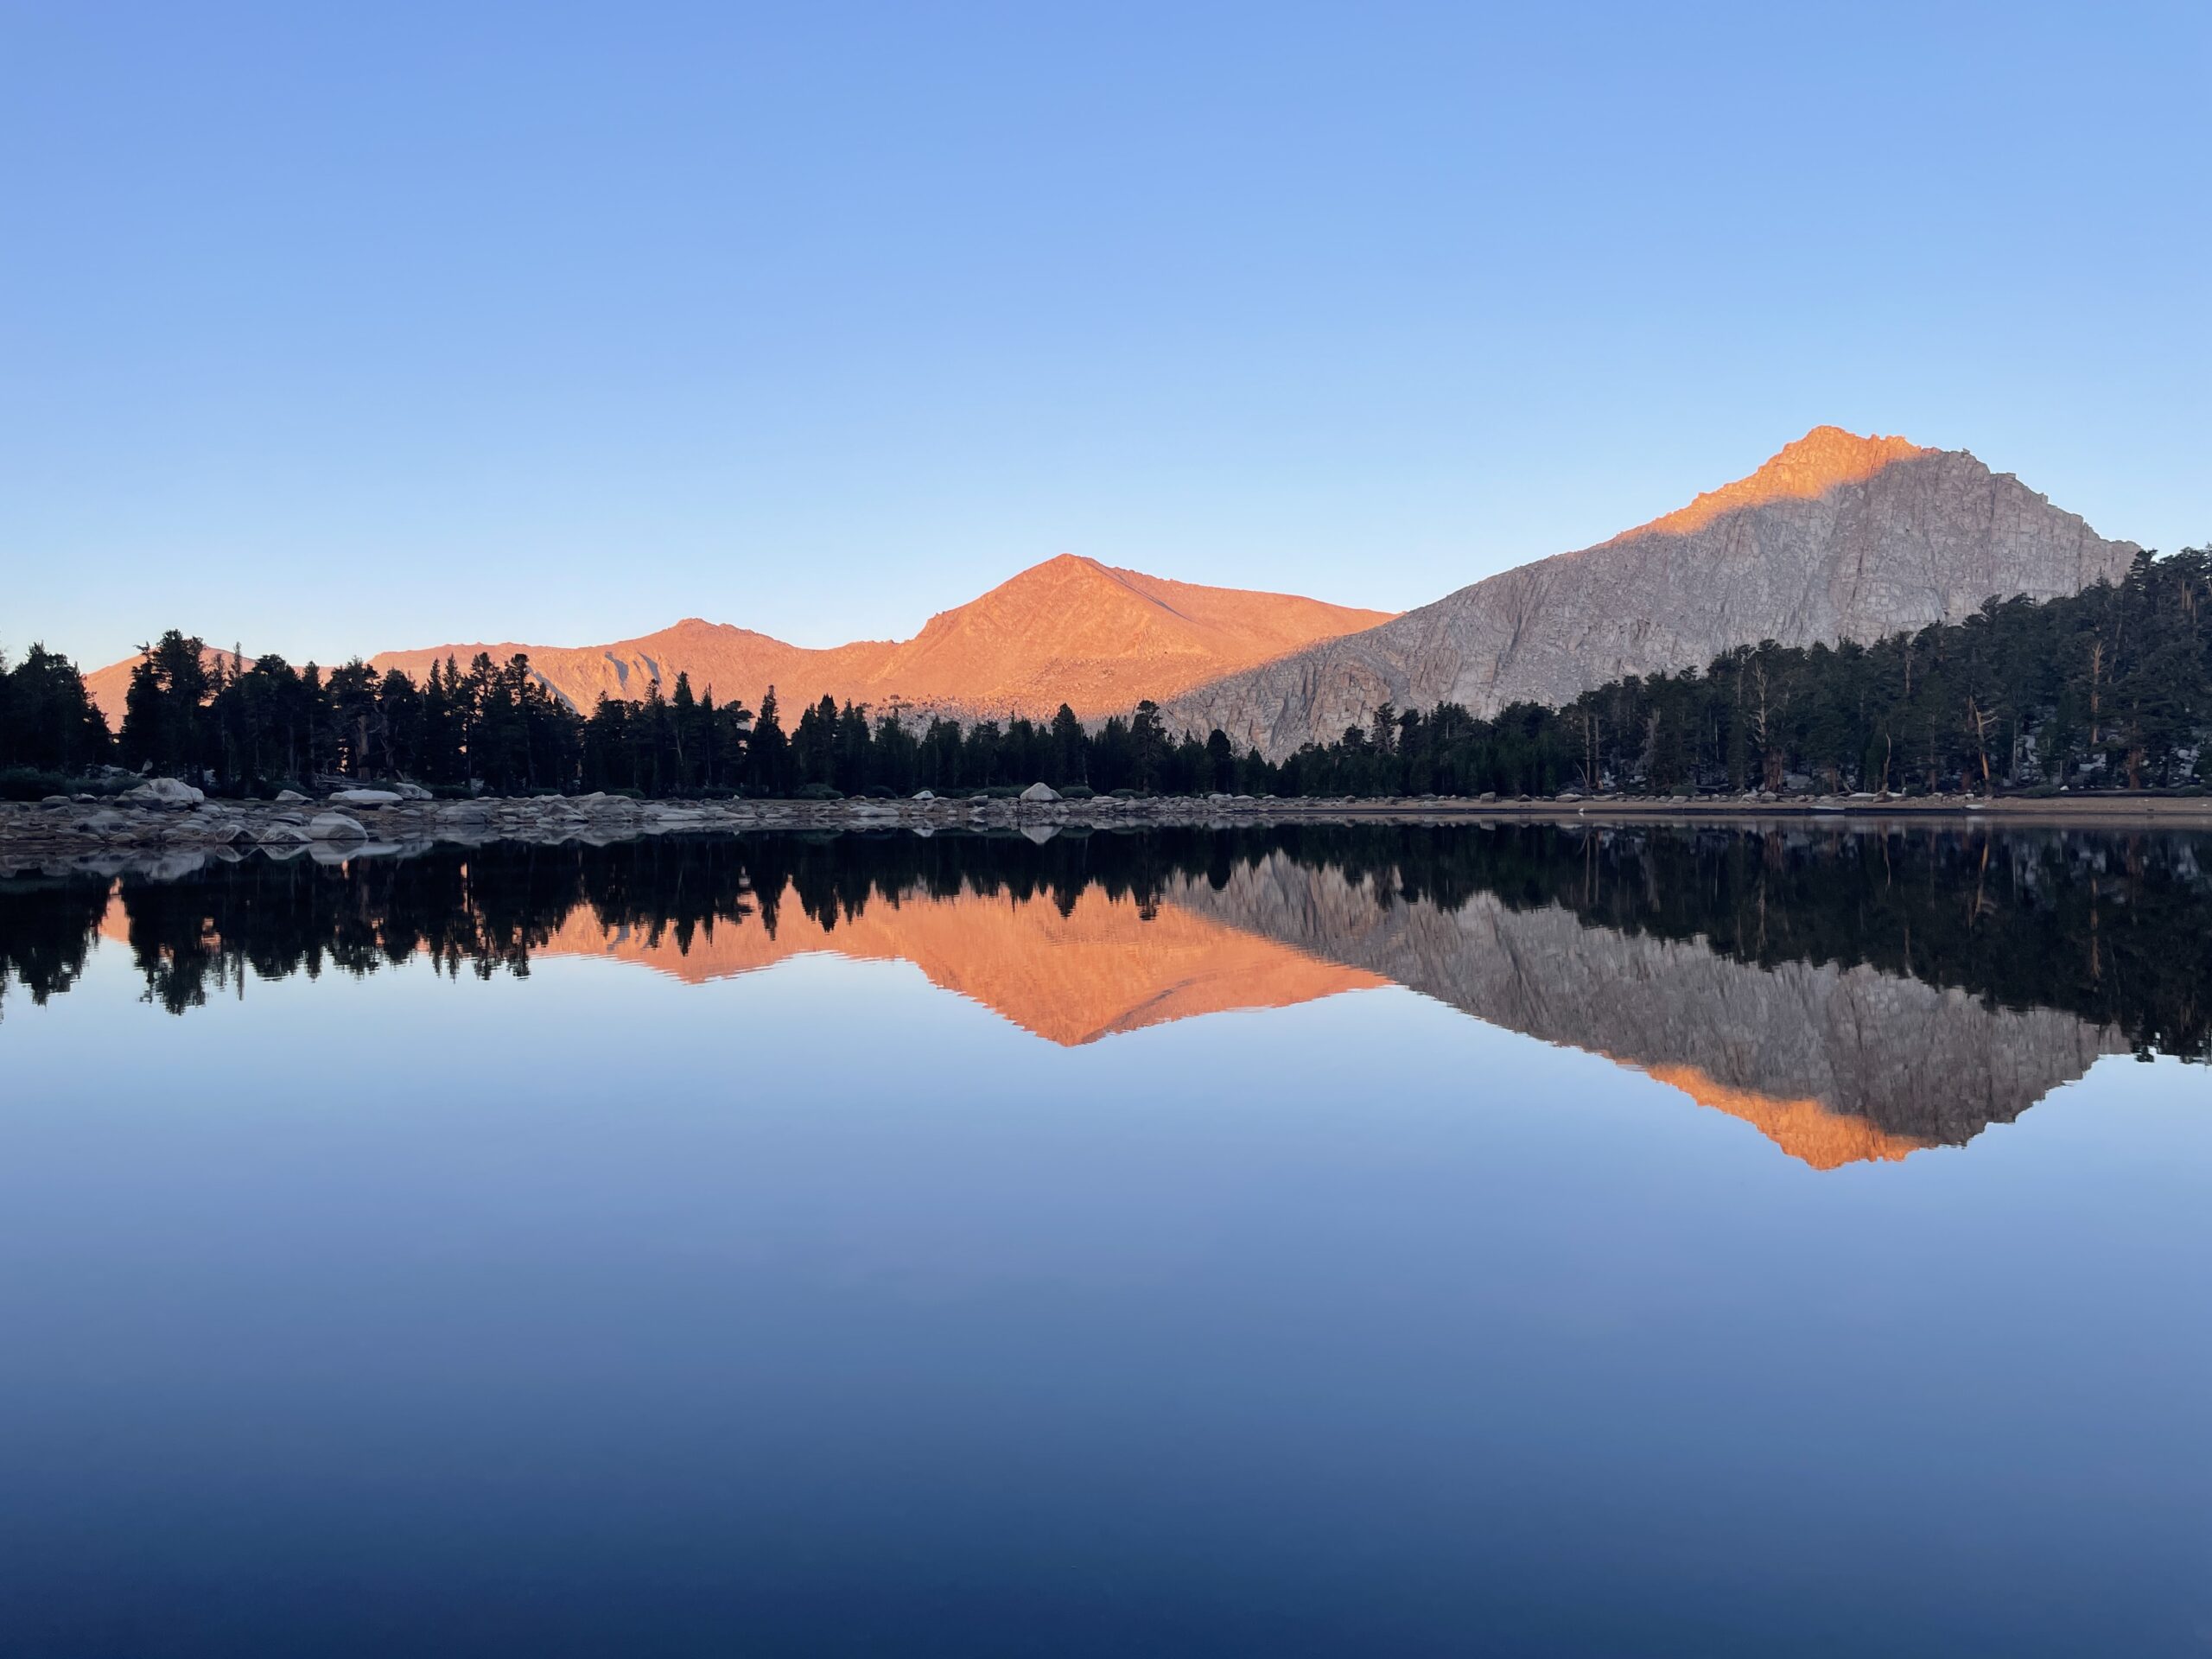 Reflection at Muir Lake